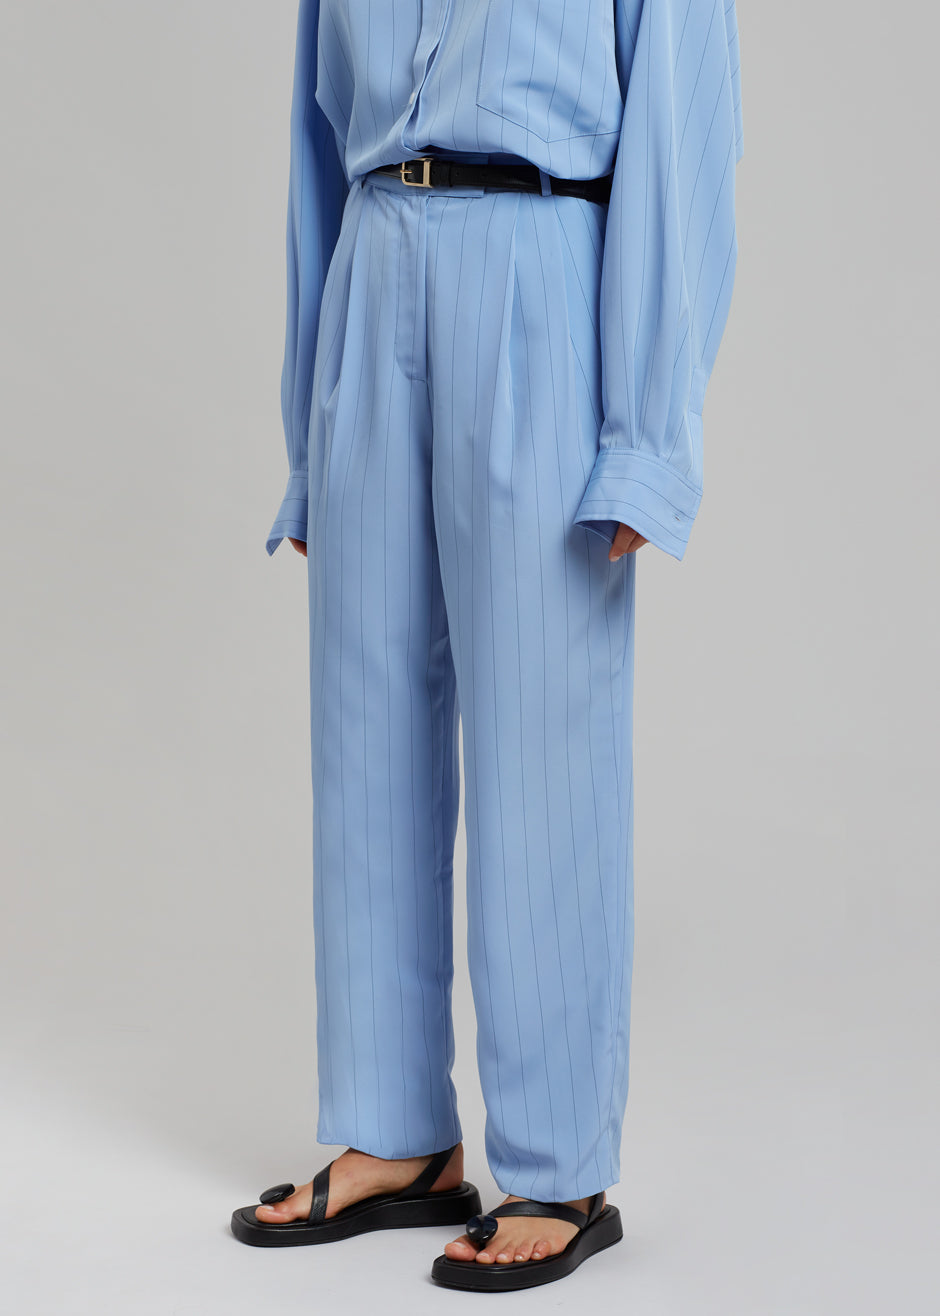 Bea Stripe Suit Pants - White/Light Blue – The Frankie Shop